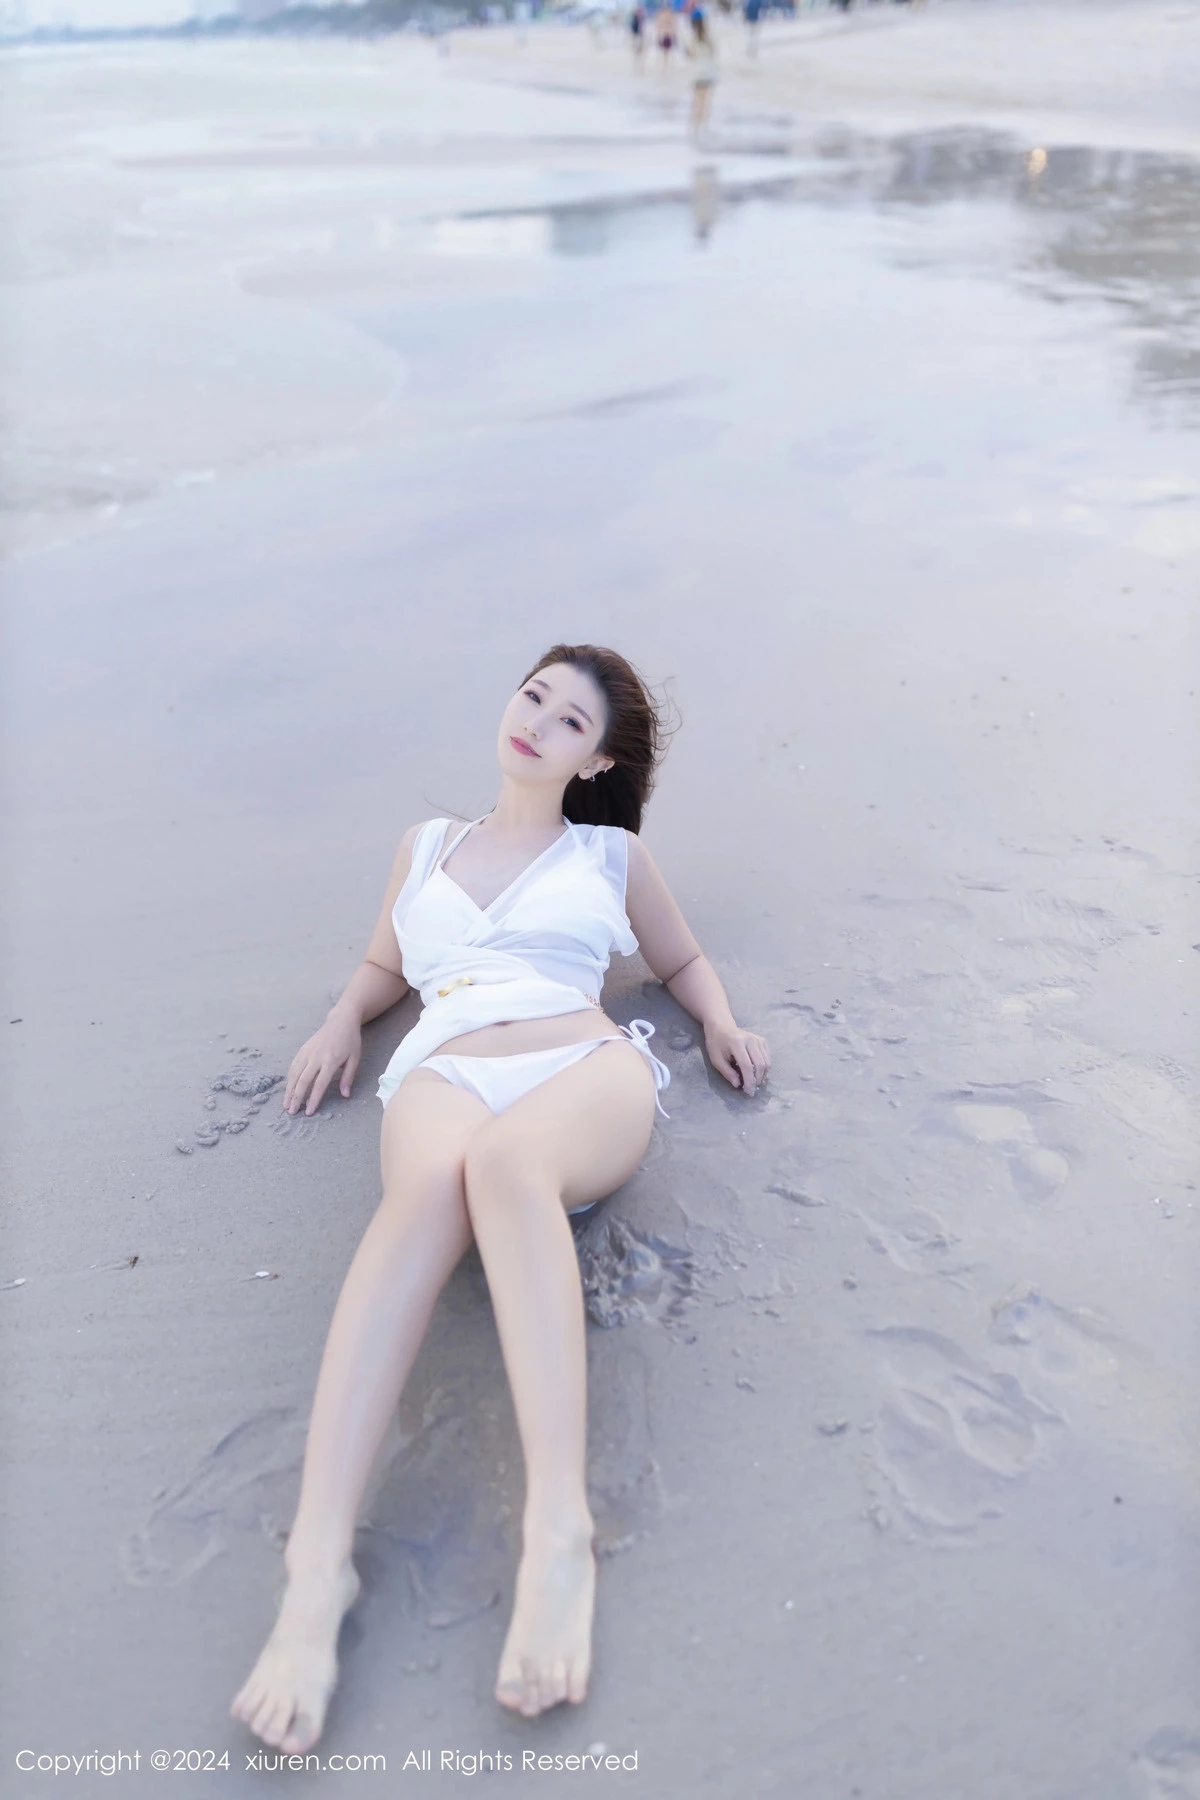 [XiuRen秀人网]第8123期_模特杏子Yada户外性感白色比基尼服饰秀完美身材迷人诱惑写真81P